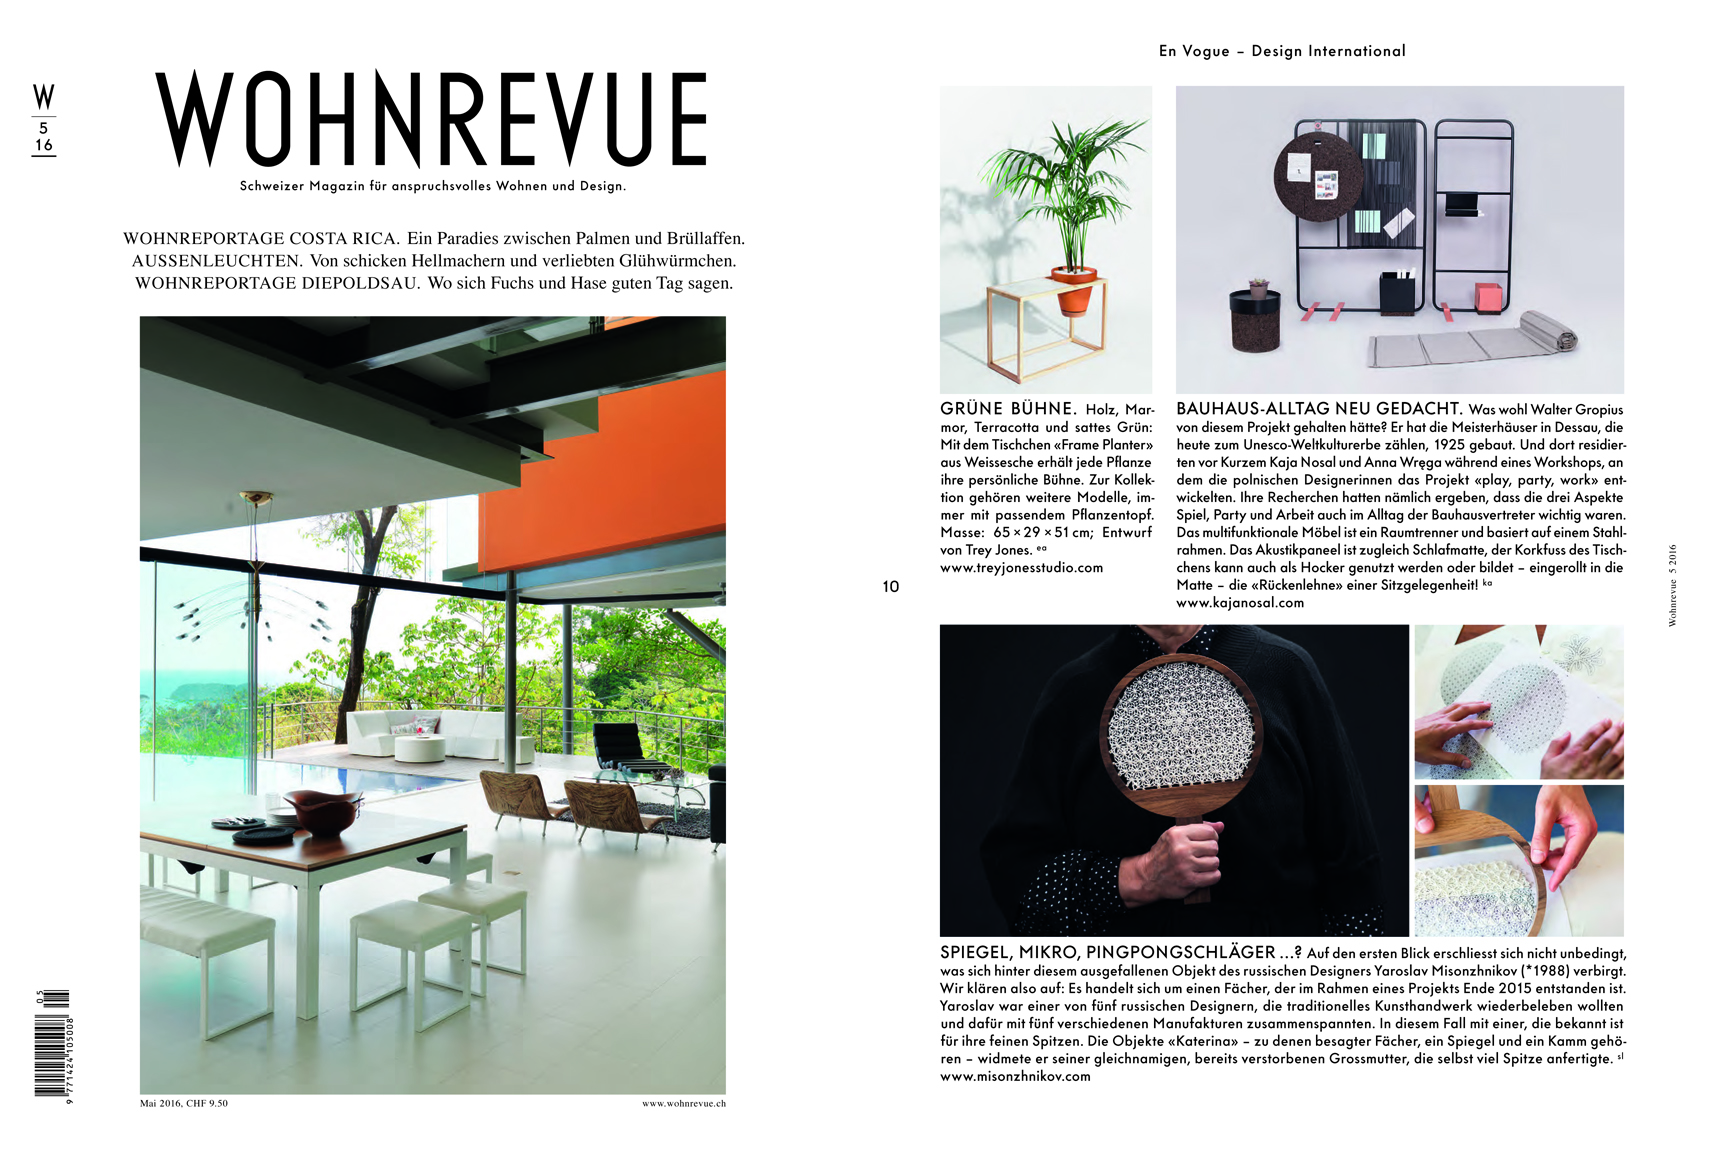 Wohnrevue / Belgian Design Magazine 